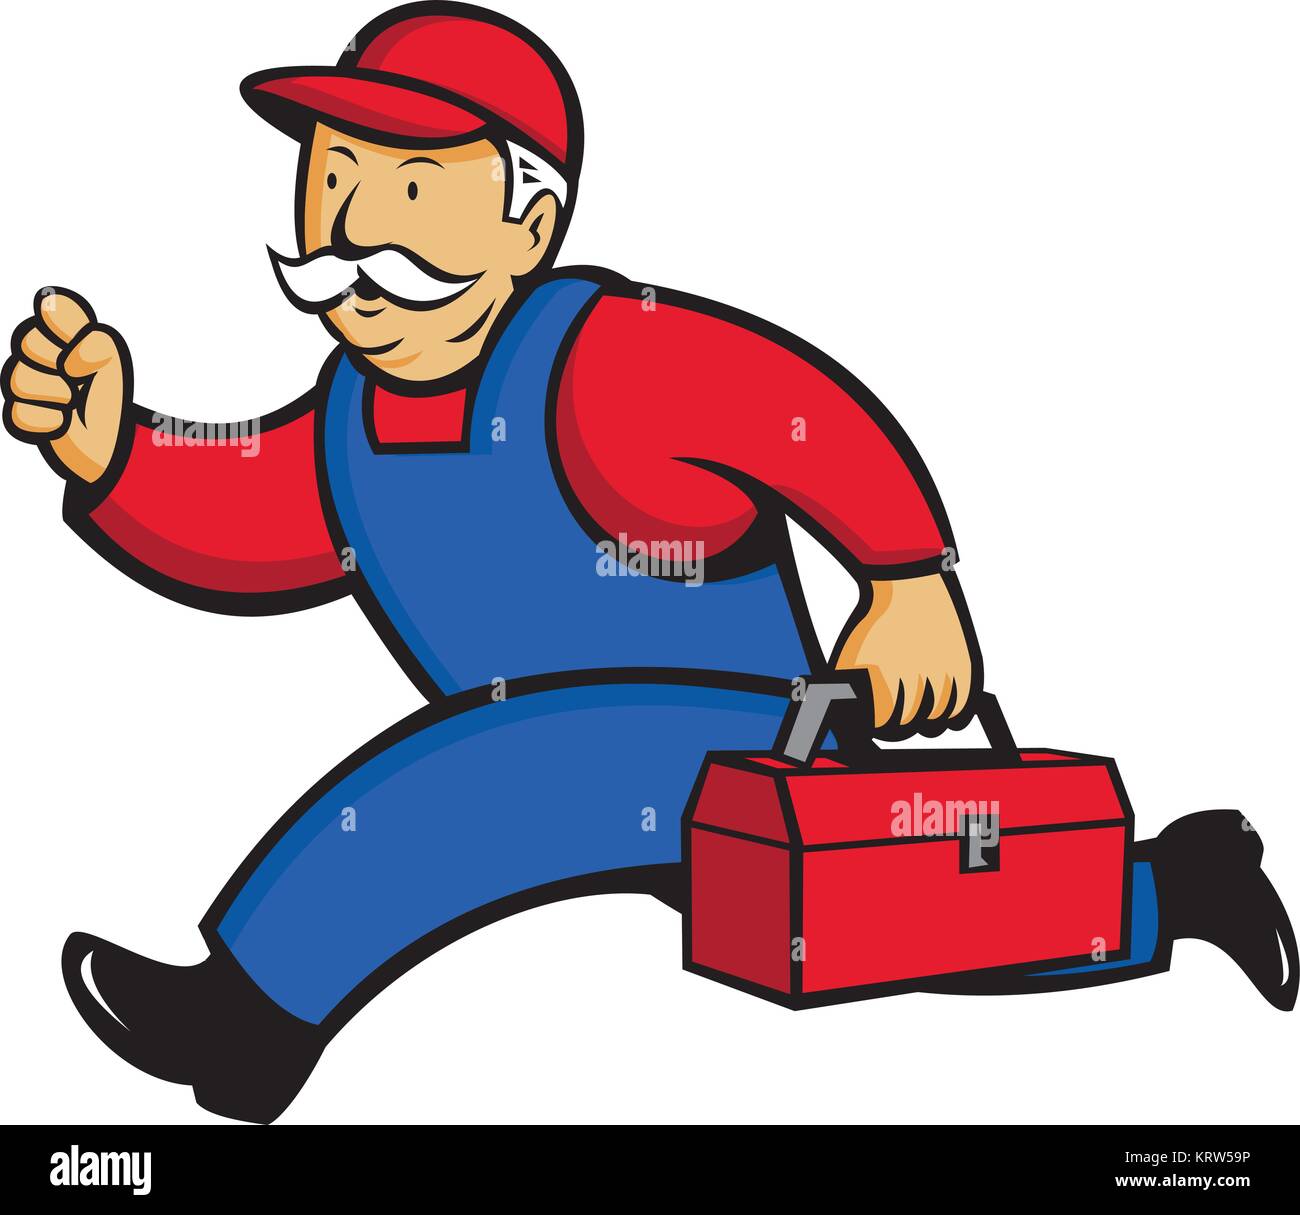 Cartoon style illustration d'un technicien en climatisation, Climatisation Technicien, mécanicien ou réparateur exécutant avec boîte à outils vu de côté o Illustration de Vecteur